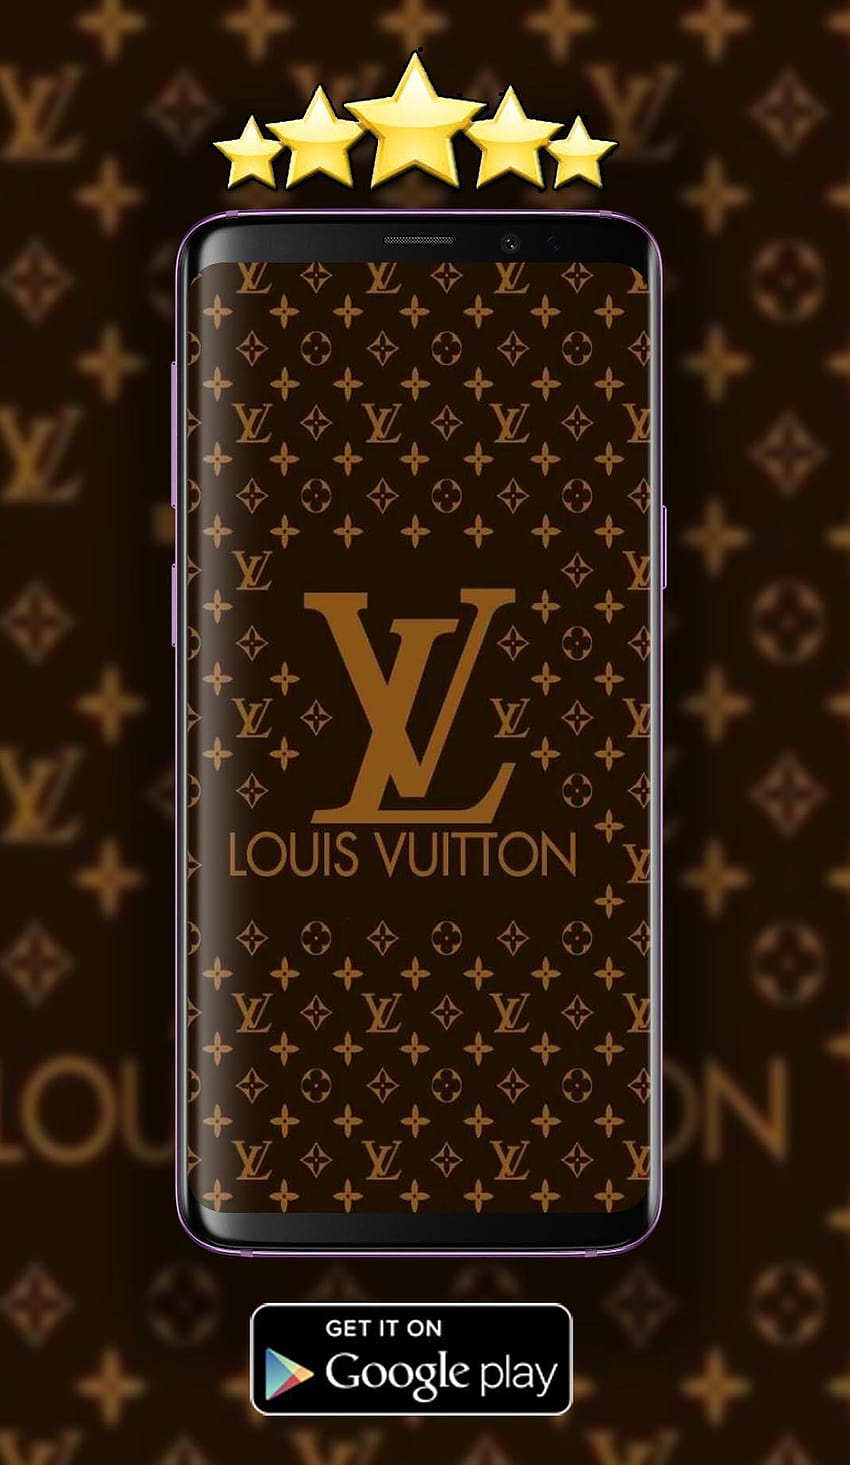 HD Louis Vuitton Wallpaper - iXpap